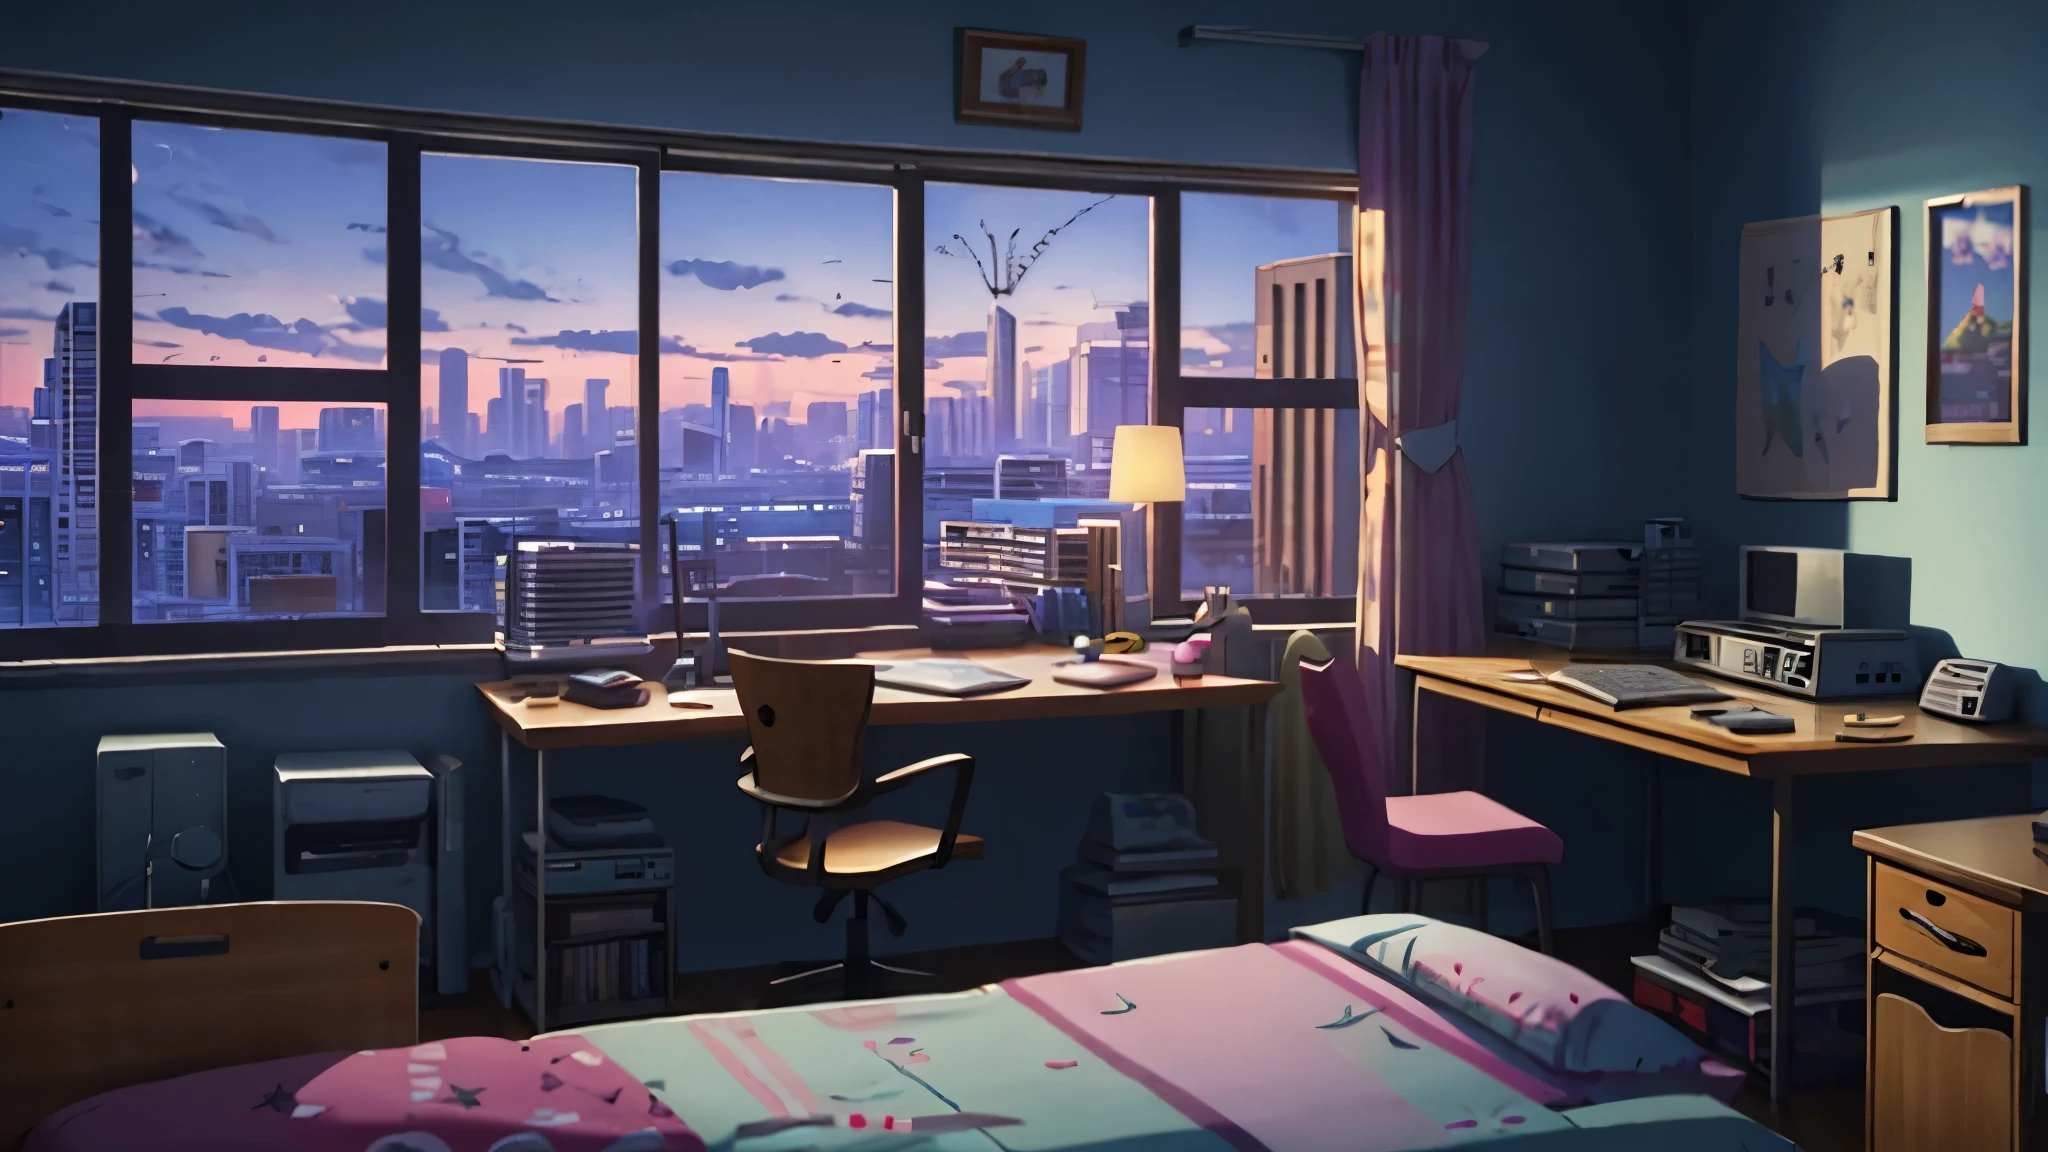 3D-Animation, filmisches Standbild eines gemütlichen Zimmers, große Fenster mit Blick auf die Stadt bei Nacht, Mond mit Haube, melancholisch, traurige Stimmung, Das Bett ist ungemacht, computer desk, vollgestopft mit unpassenden Möbeln, Die Poster im Otaku-Stil an den Wänden und die Gitarre in der Ecke,im Stil von Pixar, Disney, Dampfwelle, Mädchen mit Kopfhörern am Schreibtisch